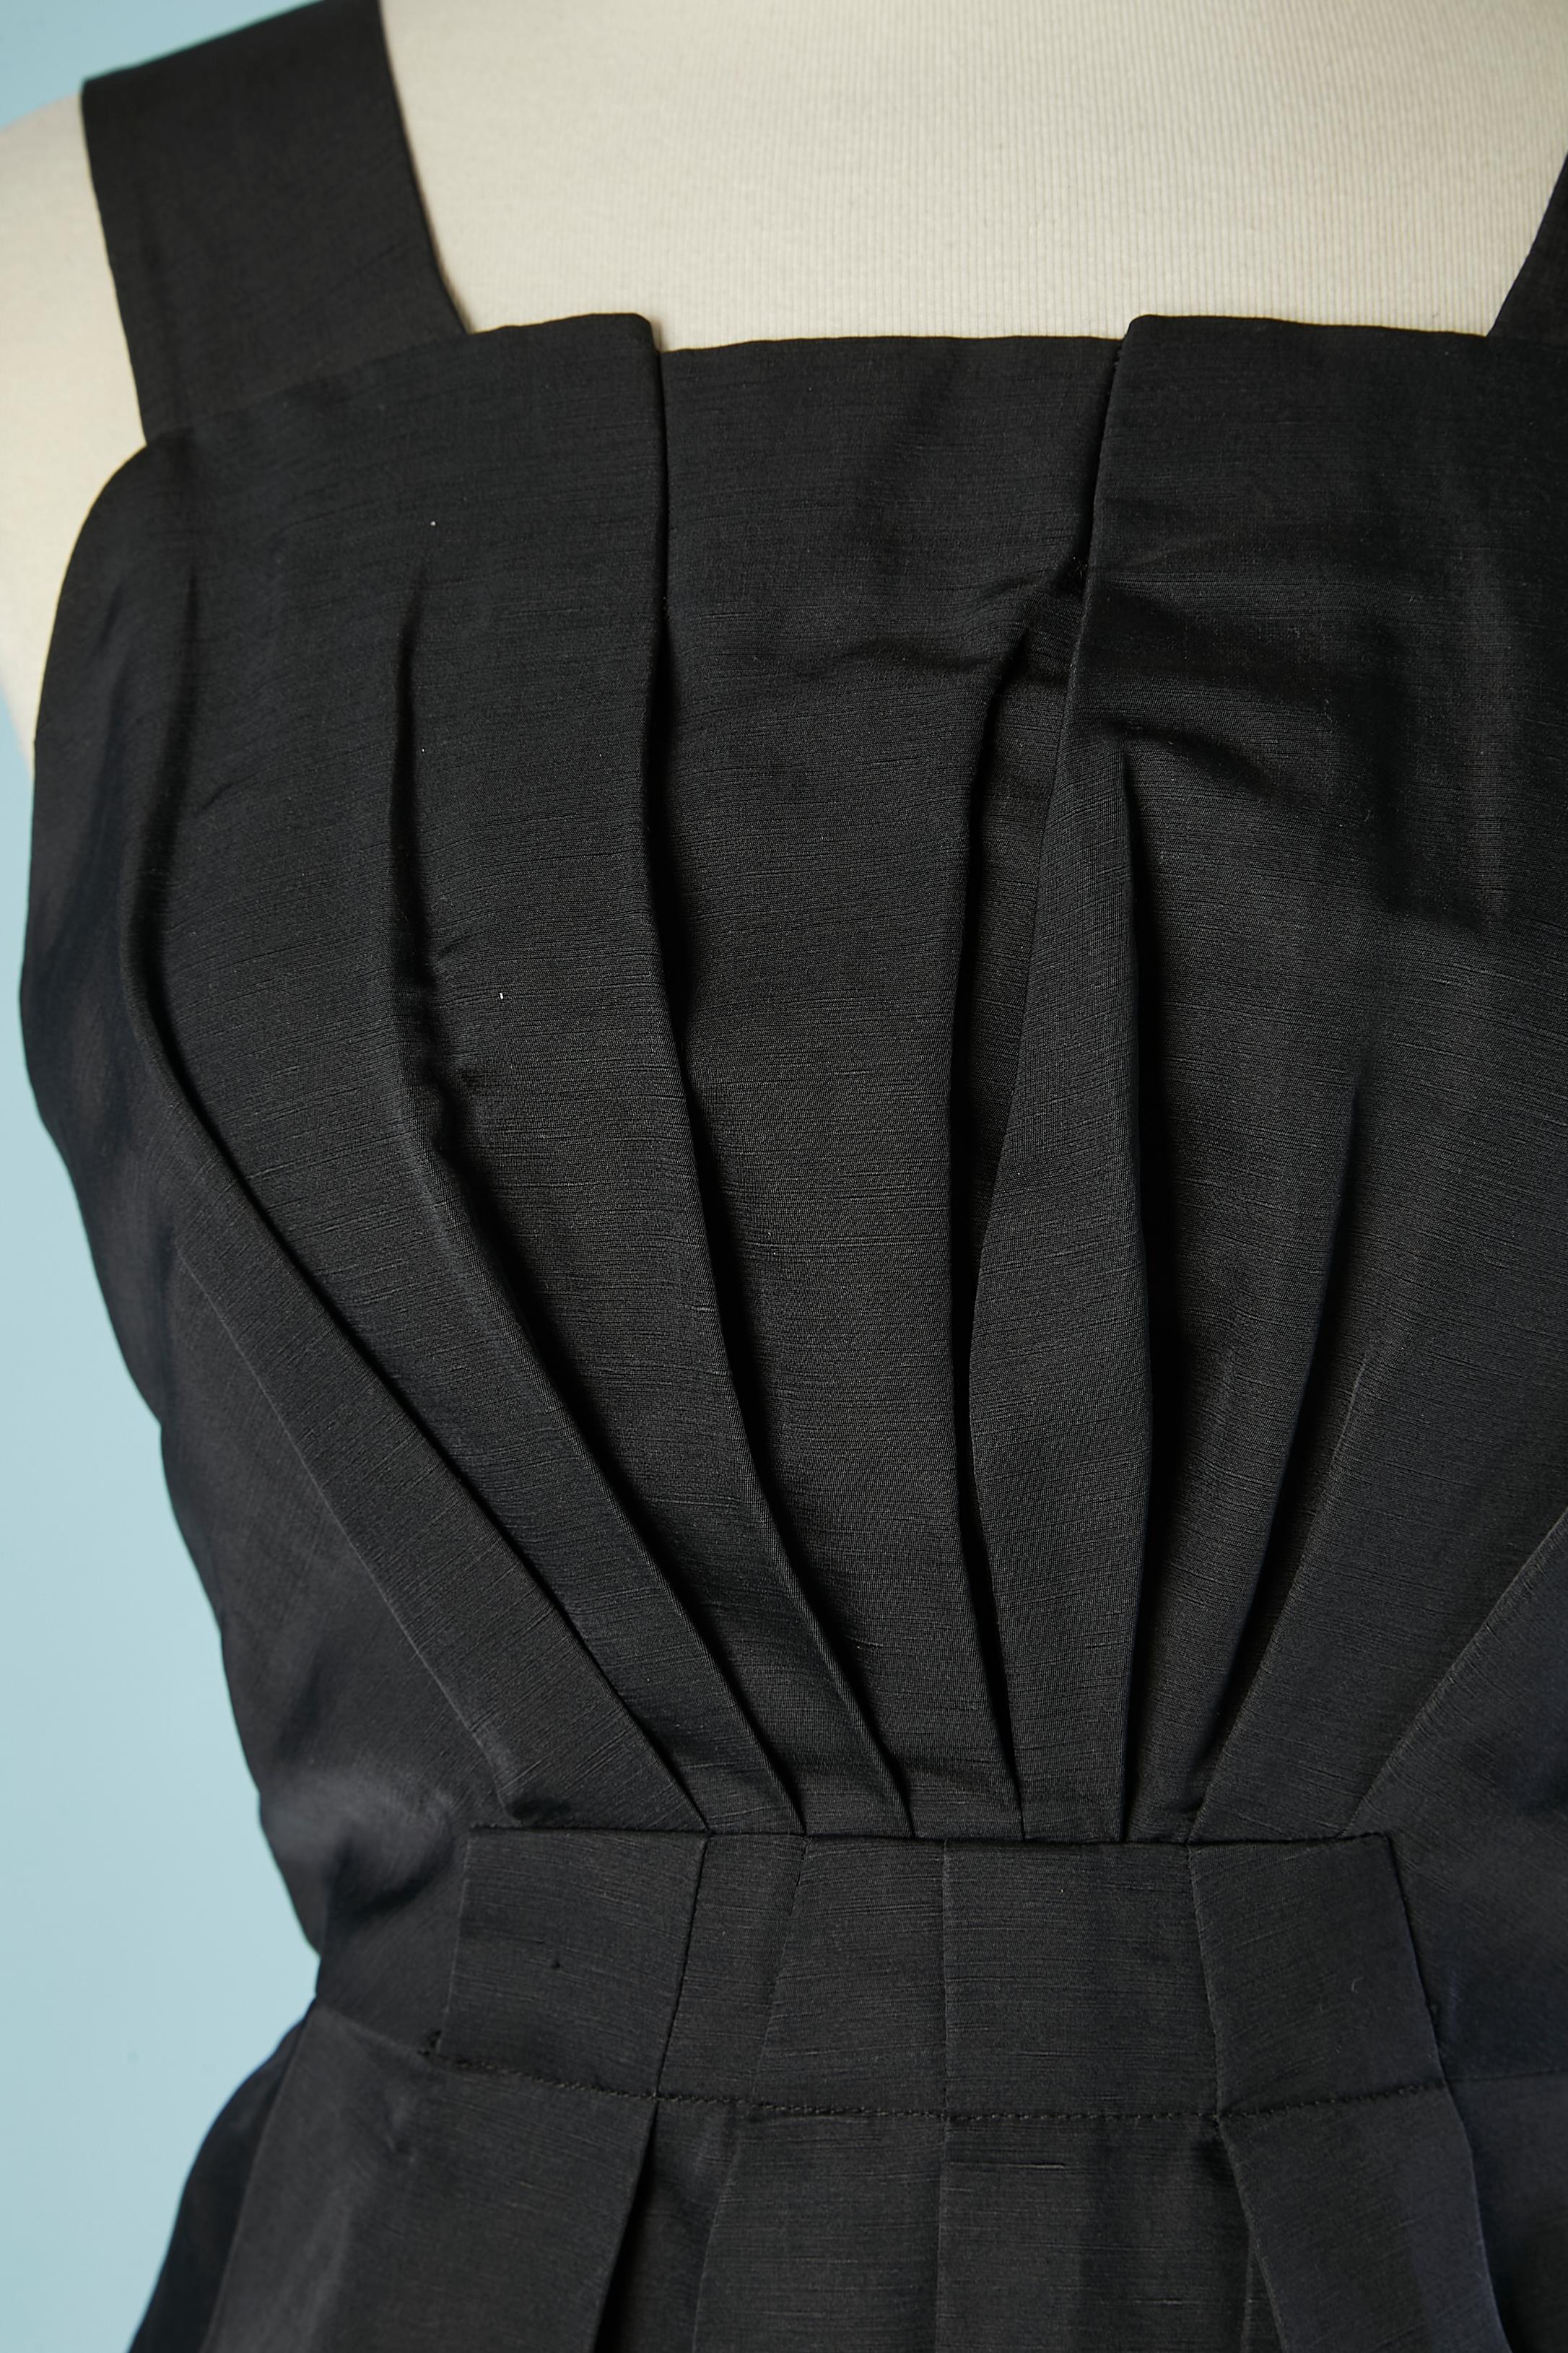 Robe de cocktail noire à volants Marc Jacob pour Bergdorf Goodman.
Composition du tissu : 59% lin, 41% soie. Doublure en satin de soie blanc. 
Fermeture éclair au milieu du dos et un bouton-pression pour maintenir les volants en place. 
TAILLE 2 (XS)